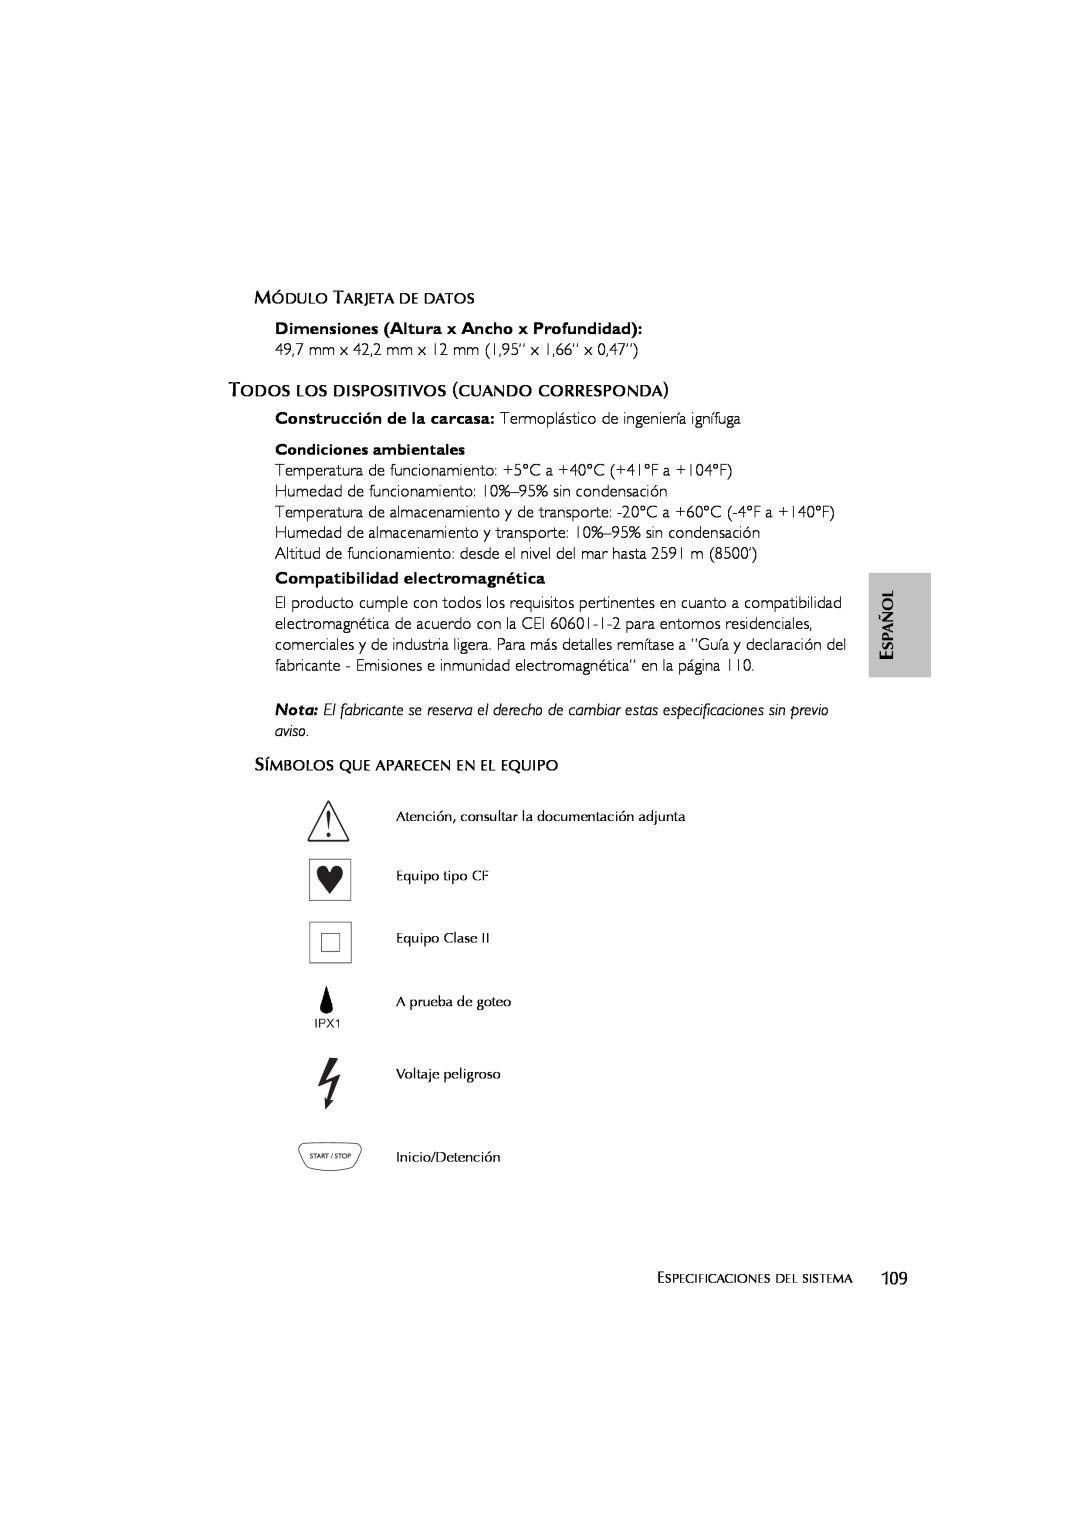 ResMed s8 user manual Compatibilidad electromagnética, Dimensiones Altura x Ancho x Profundidad 